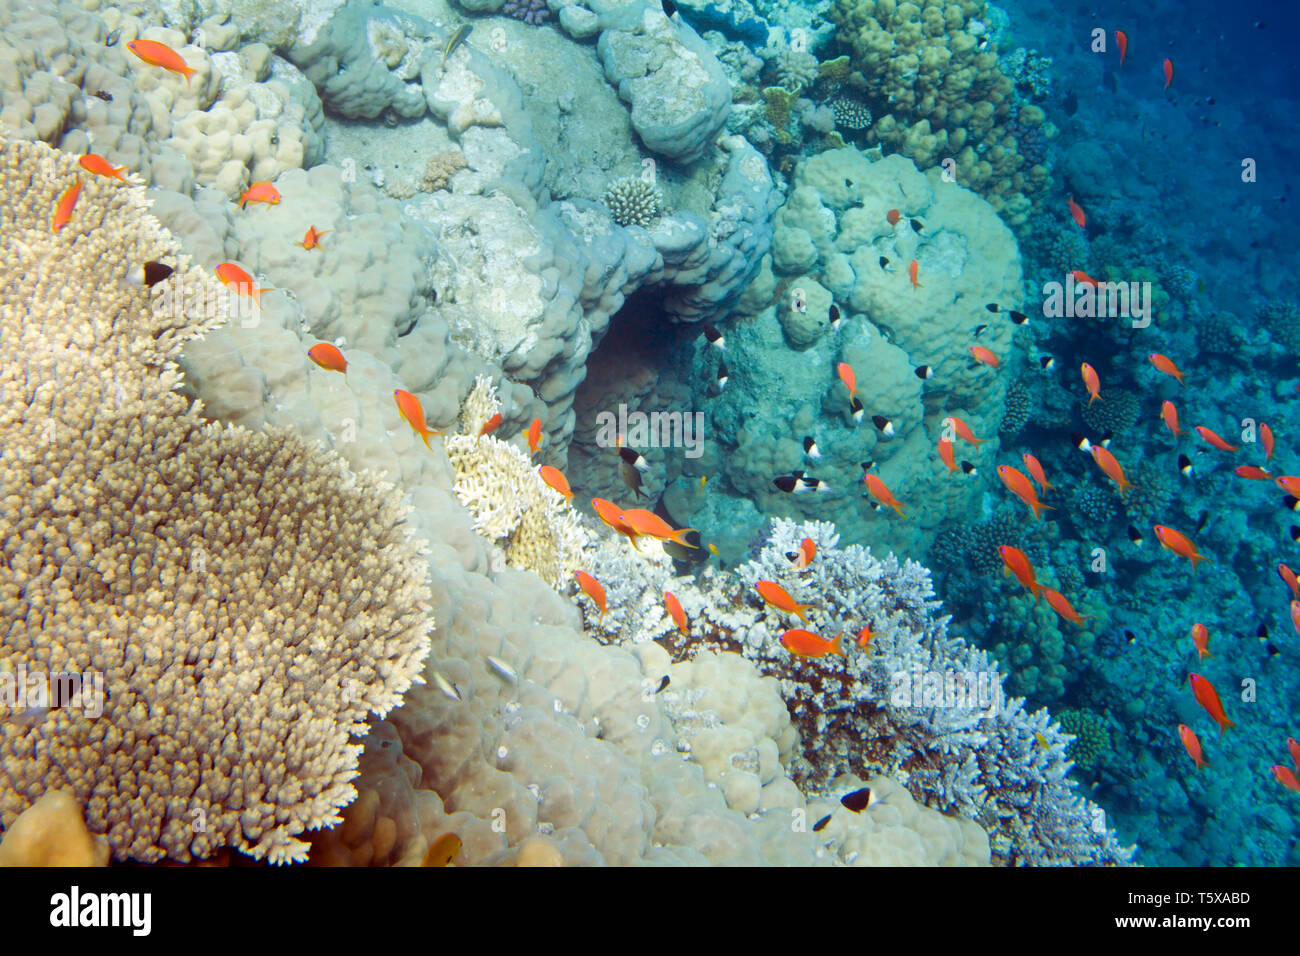 La vita subacquea del Mar Rosso in Egitto. I pesci di acqua salata e la barriera corallina. In una caverna nel mare profondo Foto Stock